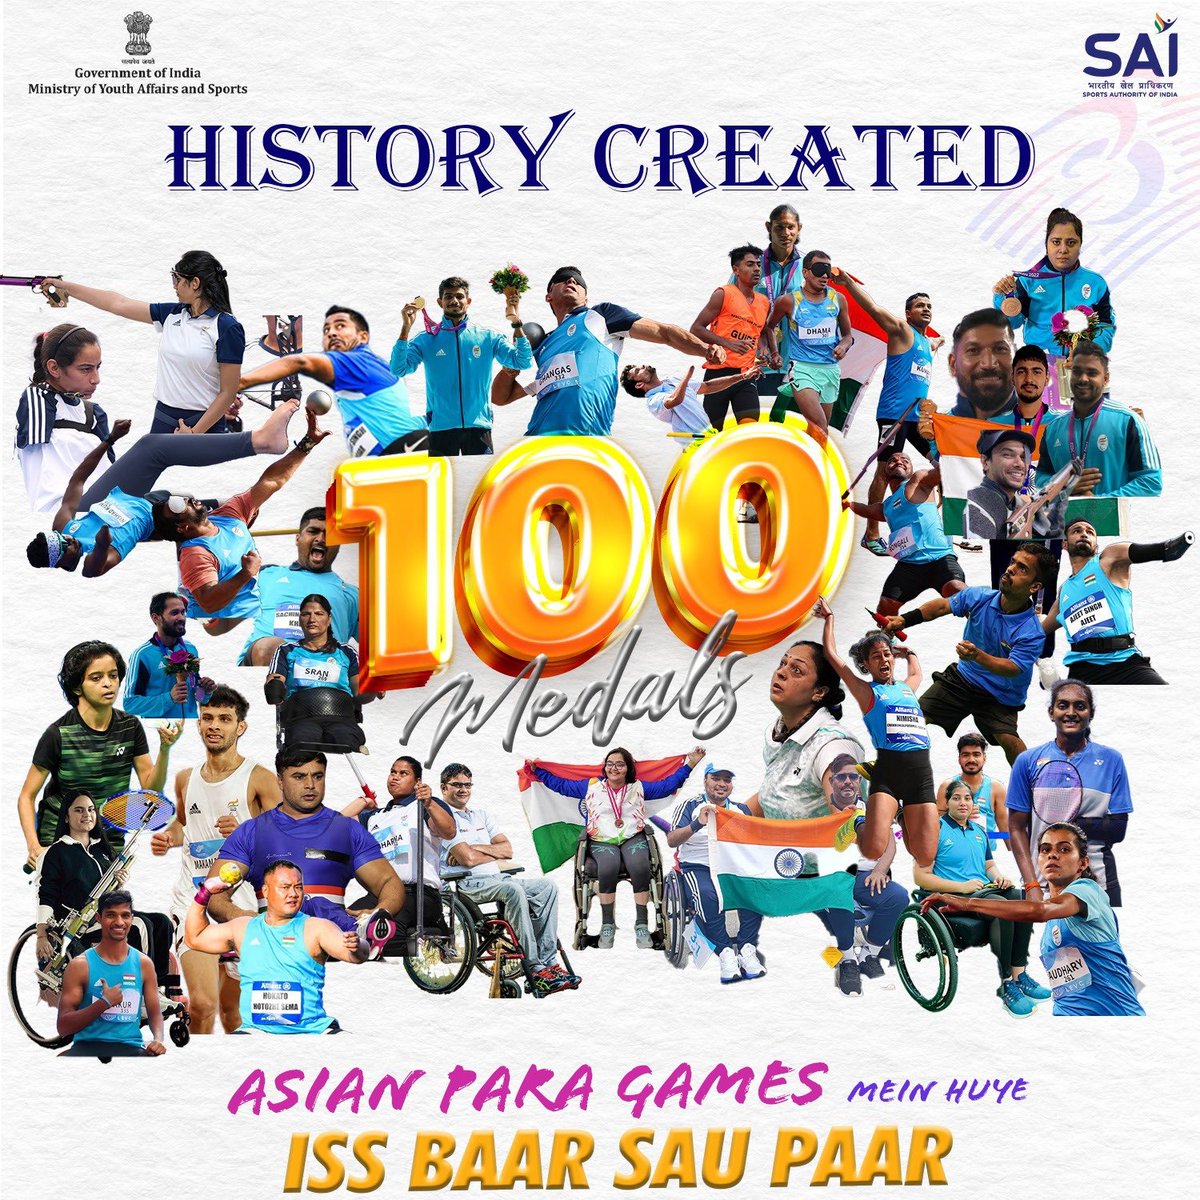 पदकों का शतक 🏅

भारतीय पैरा एथलीटों ने कड़ी मेहनत और दृढ़ संकल्प से #AsianGames2022 में 100 पदक हासिल कर इतिहास रच दिया है।

भारत का मान दुनियाभर में बढ़ाने के लिए सभी खिलाड़ियों का हार्दिक अभिनंदन एवं भविष्य के लिए शुभकामनाएं।